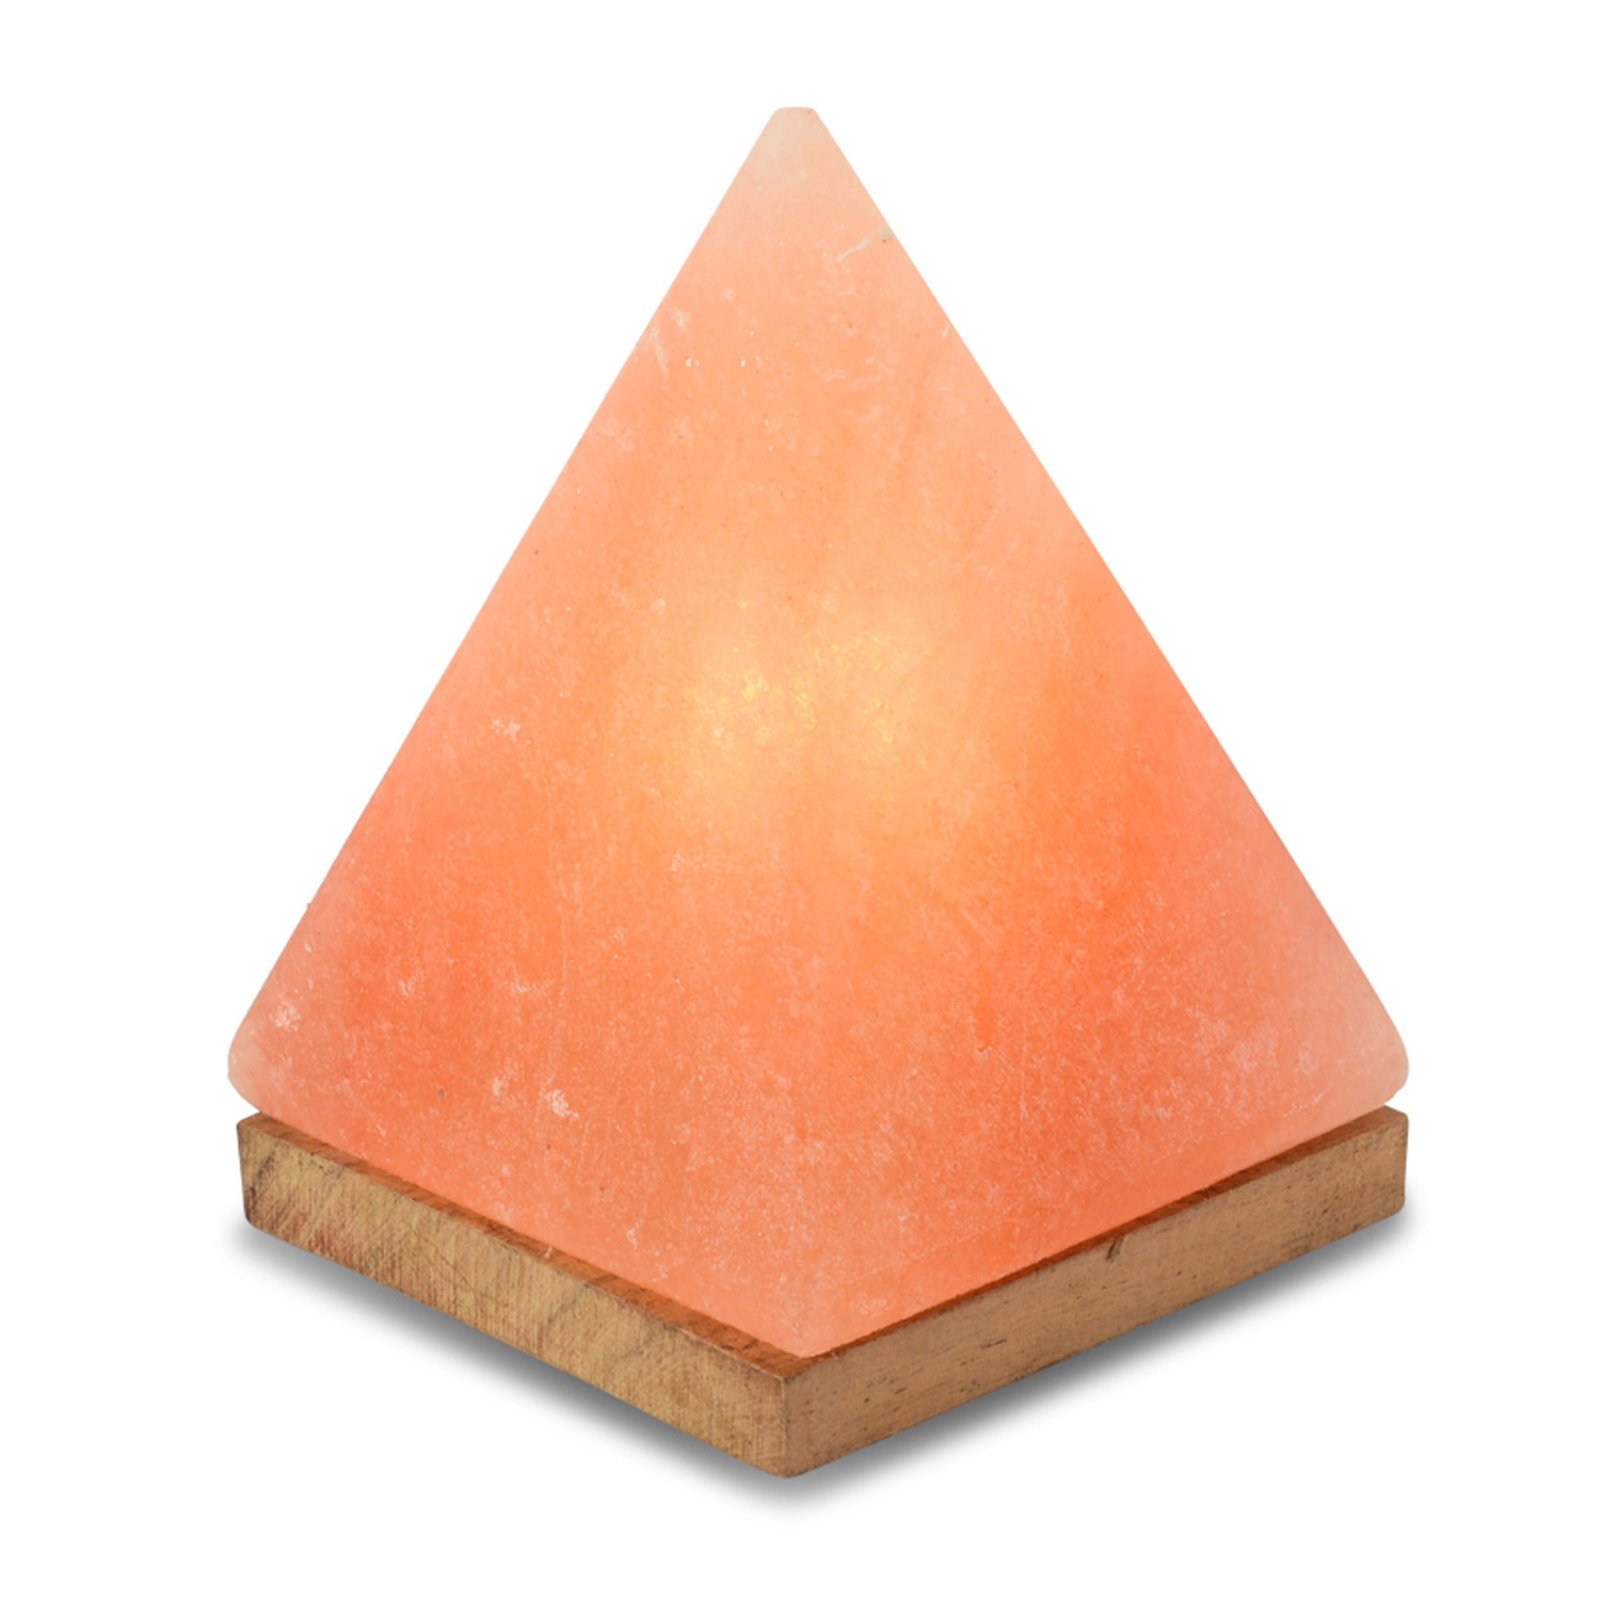 Soľná lampa Pyramída s podstavcom, jantárová